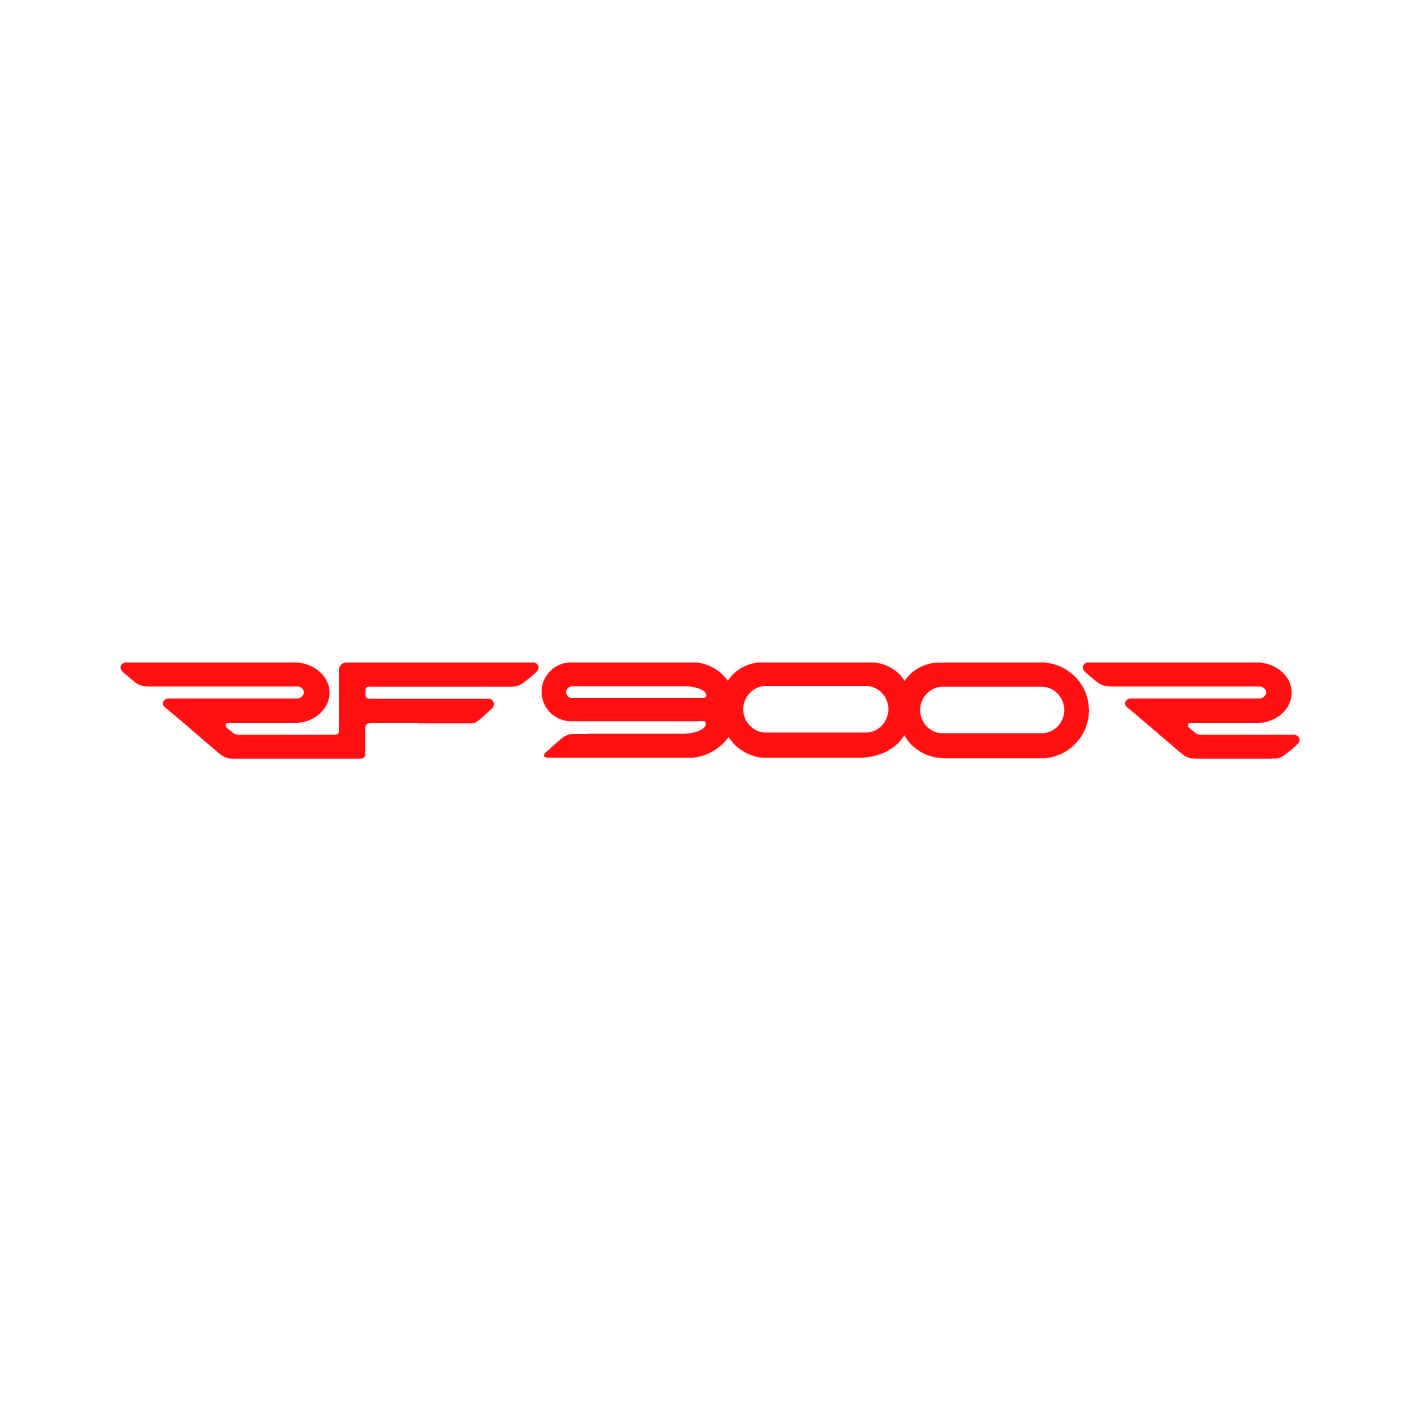 suzuki-ref31-rf900r-stickers-moto-casque-scooter-sticker-autocollant-adhesifs